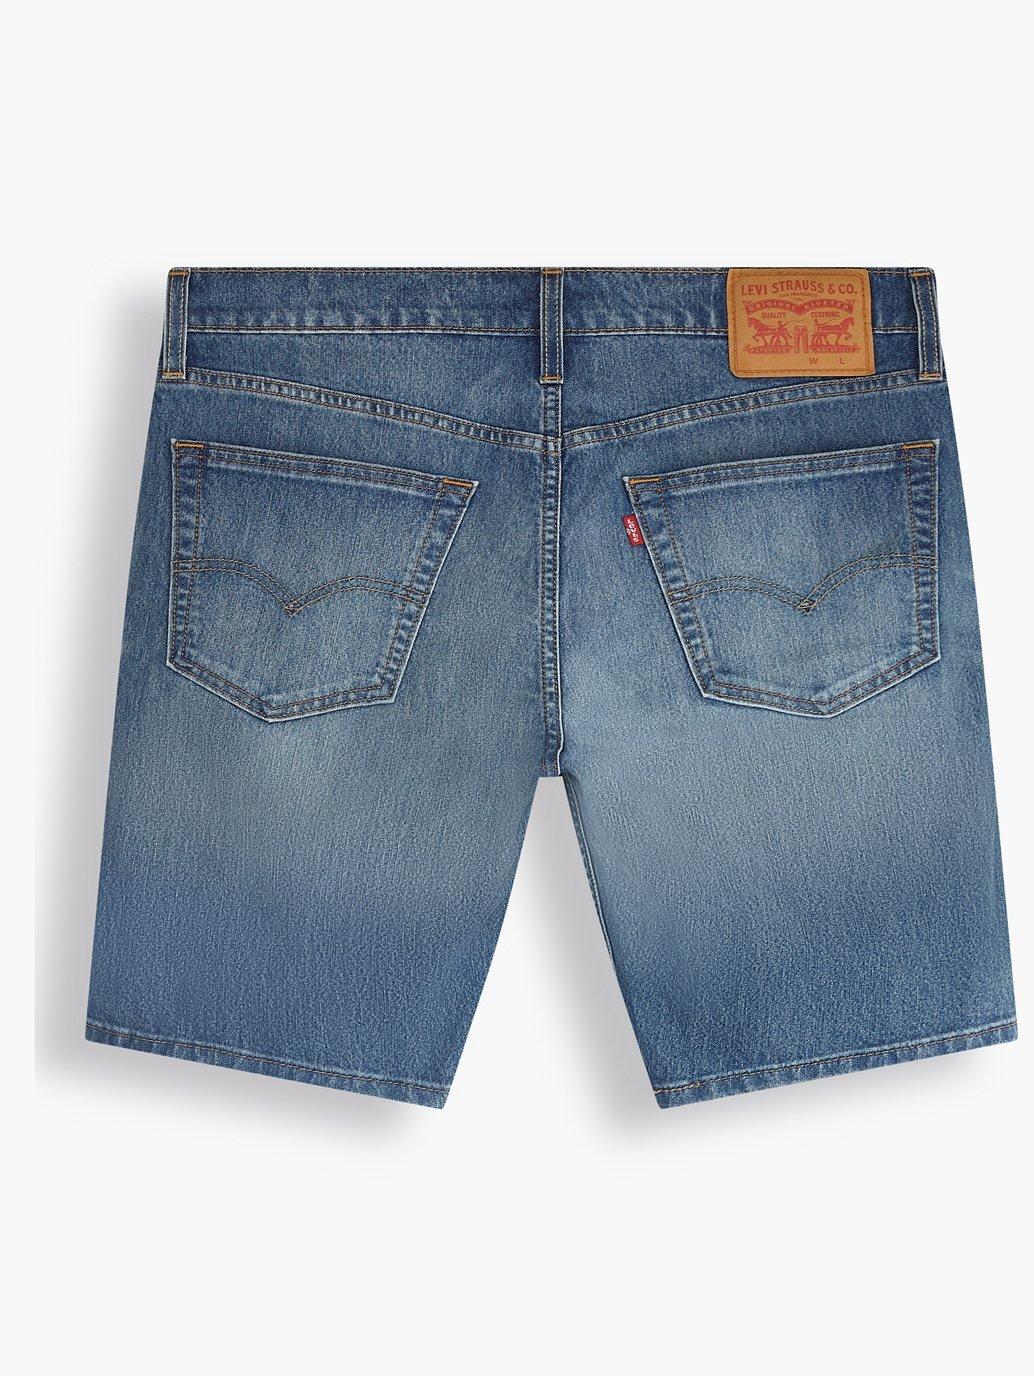 levis singapore mens standard jean shorts 398640067 22 Details